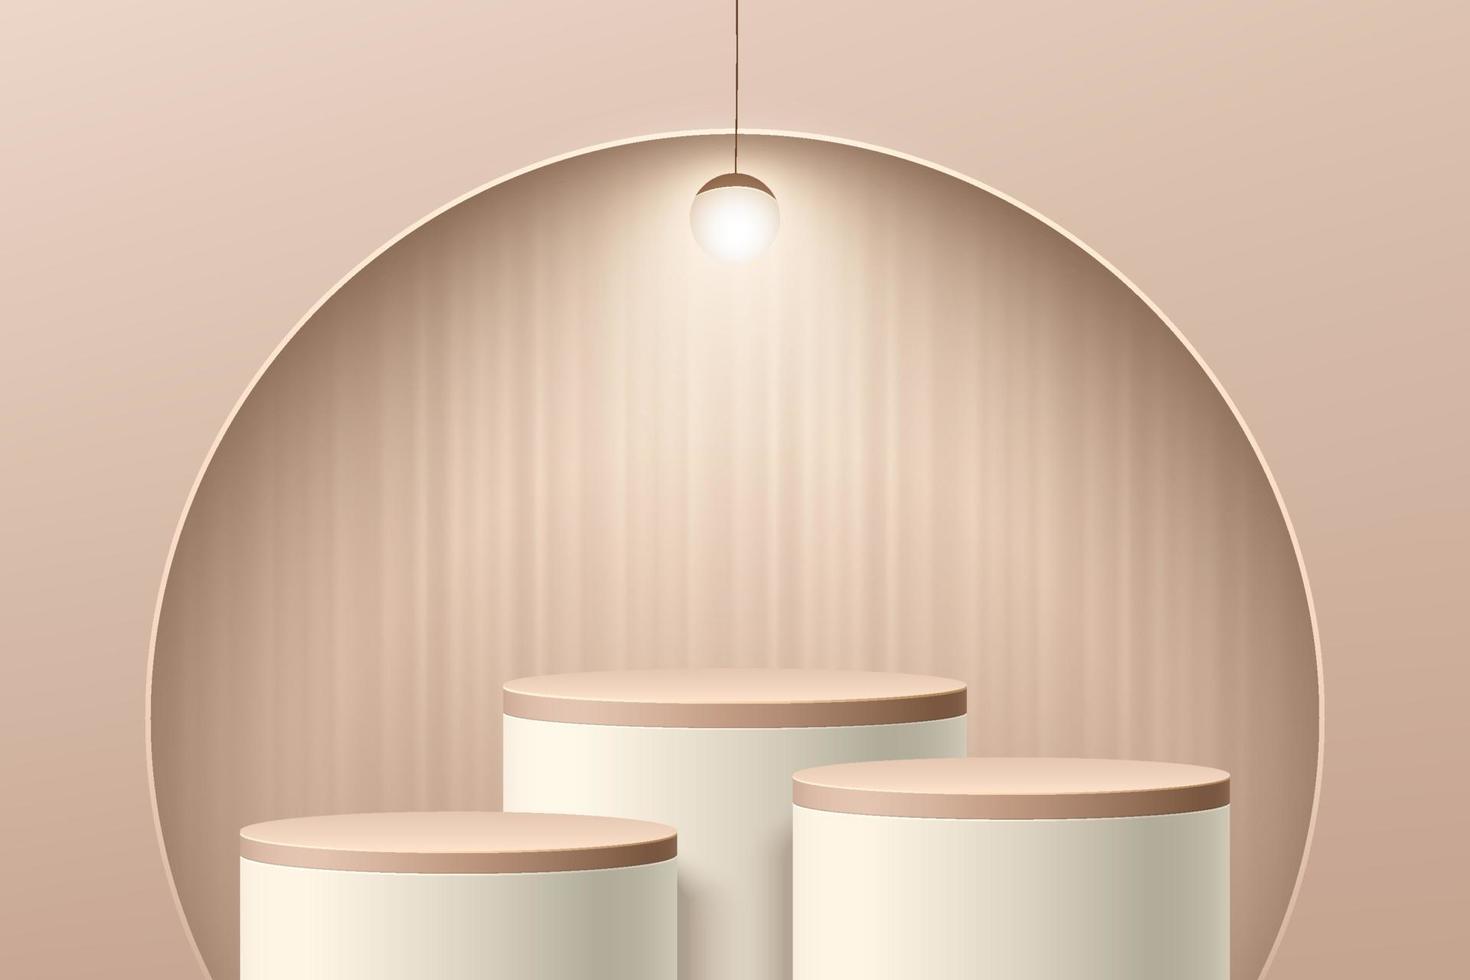 salle 3d beige abstraite avec piédestal de cylindre ou podium de stand situé dans une fenêtre en demi-cercle sur le mur. scène minimale pour la présentation de produits cosmétiques. conception de plate-forme de rendu géométrique de vecteur